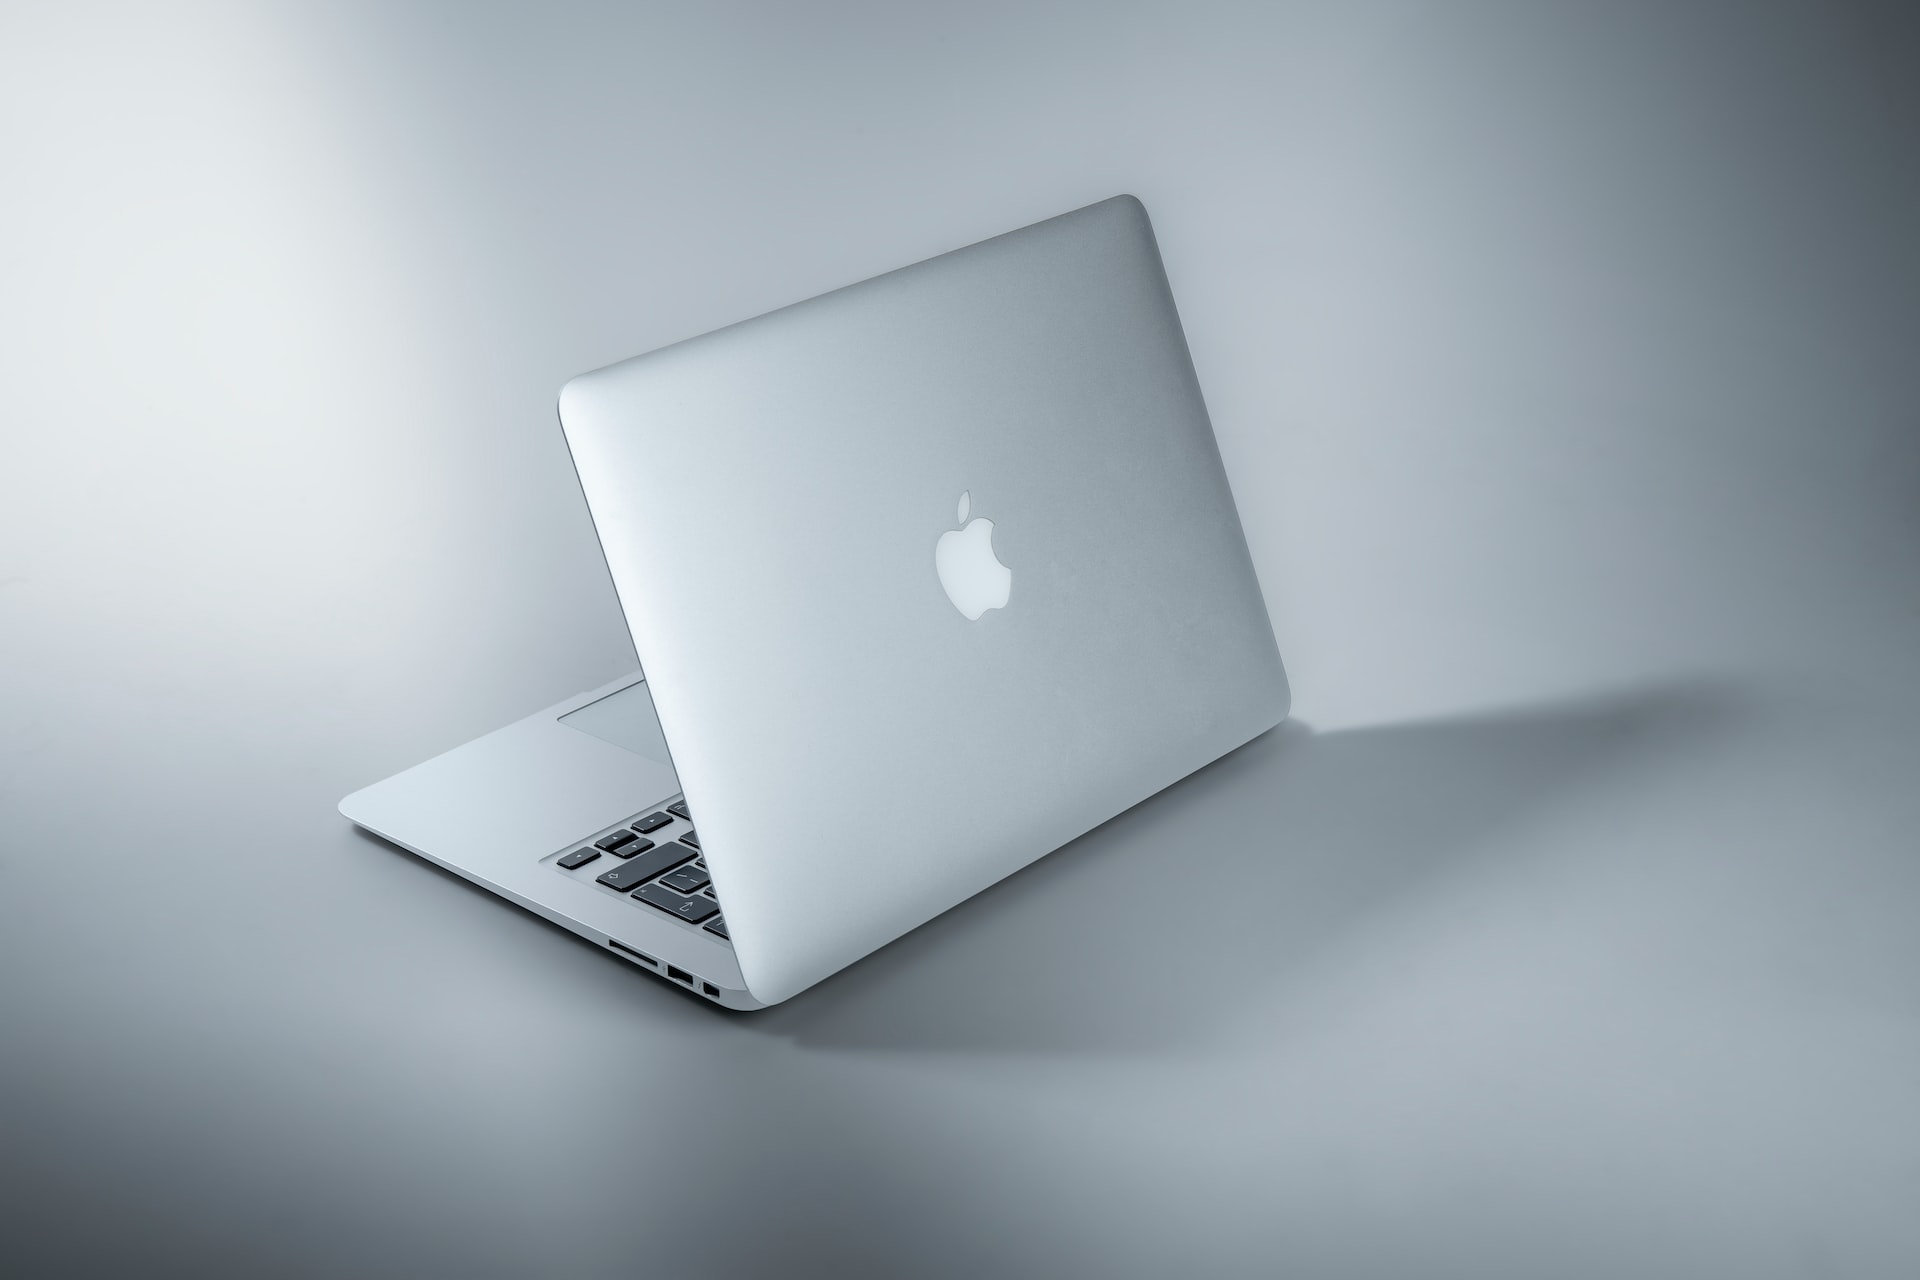 Jakie zalety ma Macbook?